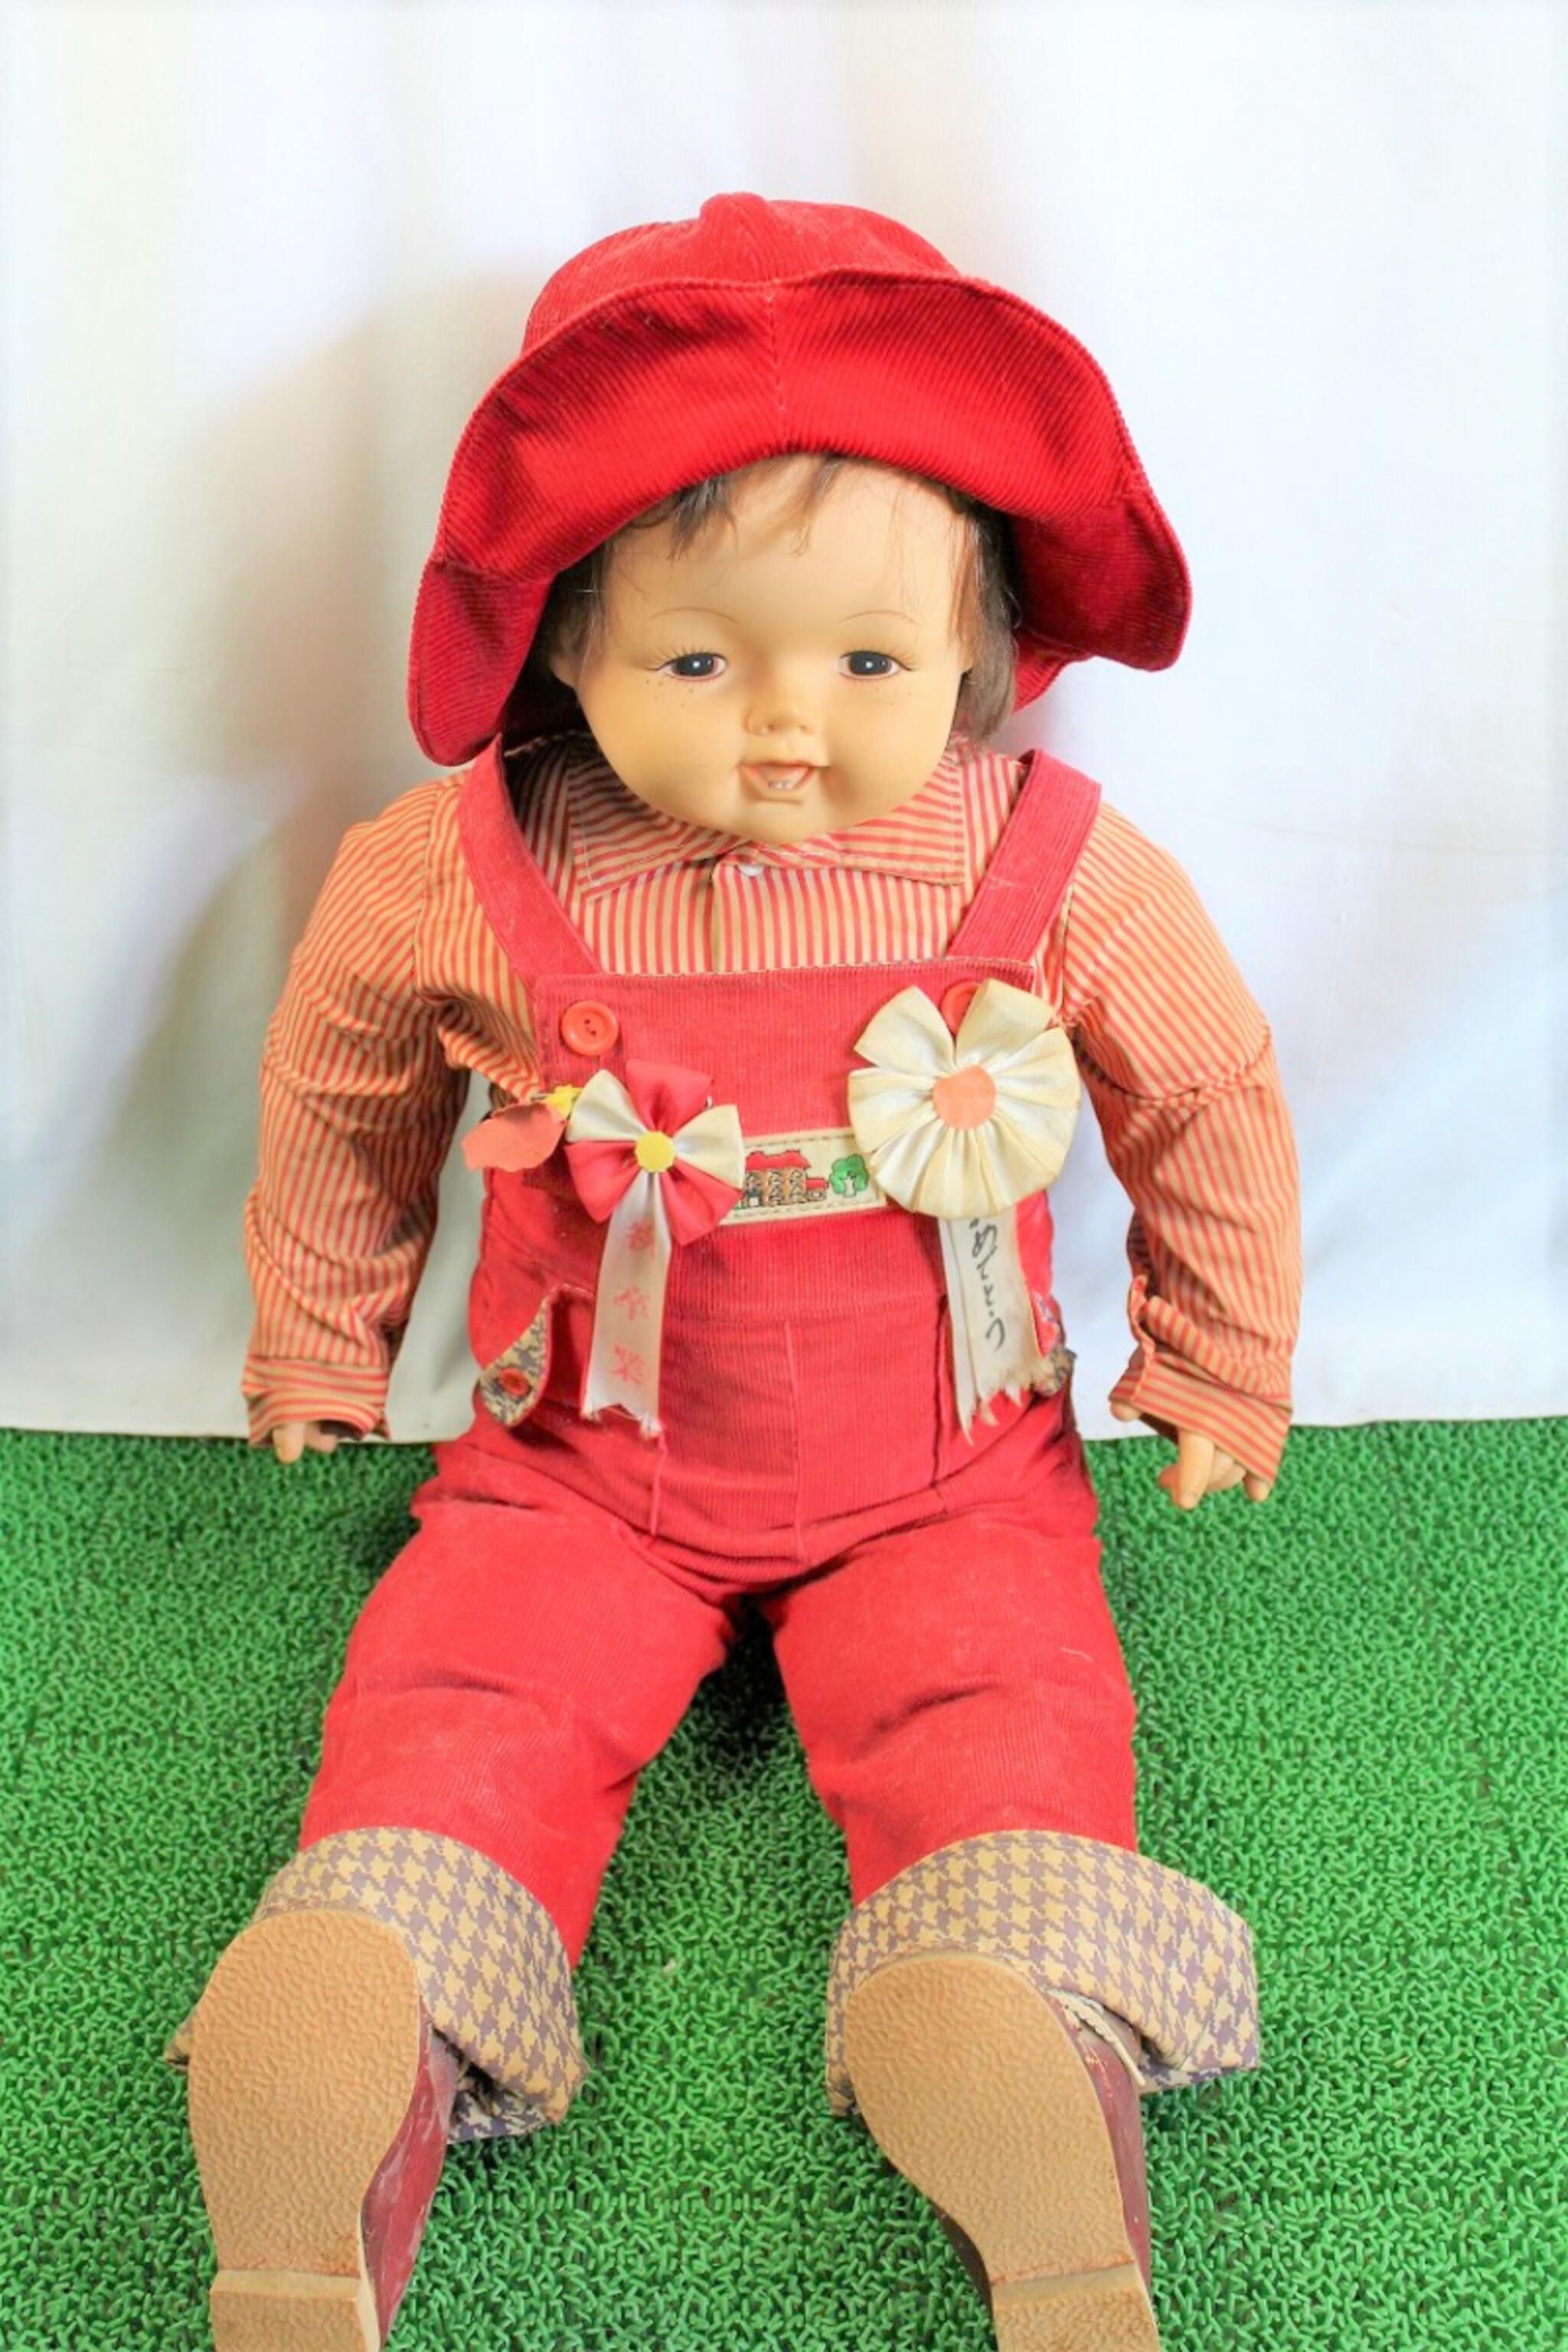 なんでも査定のトータル石川支店からのお知らせ(大きな人形をお買取り)に関する写真